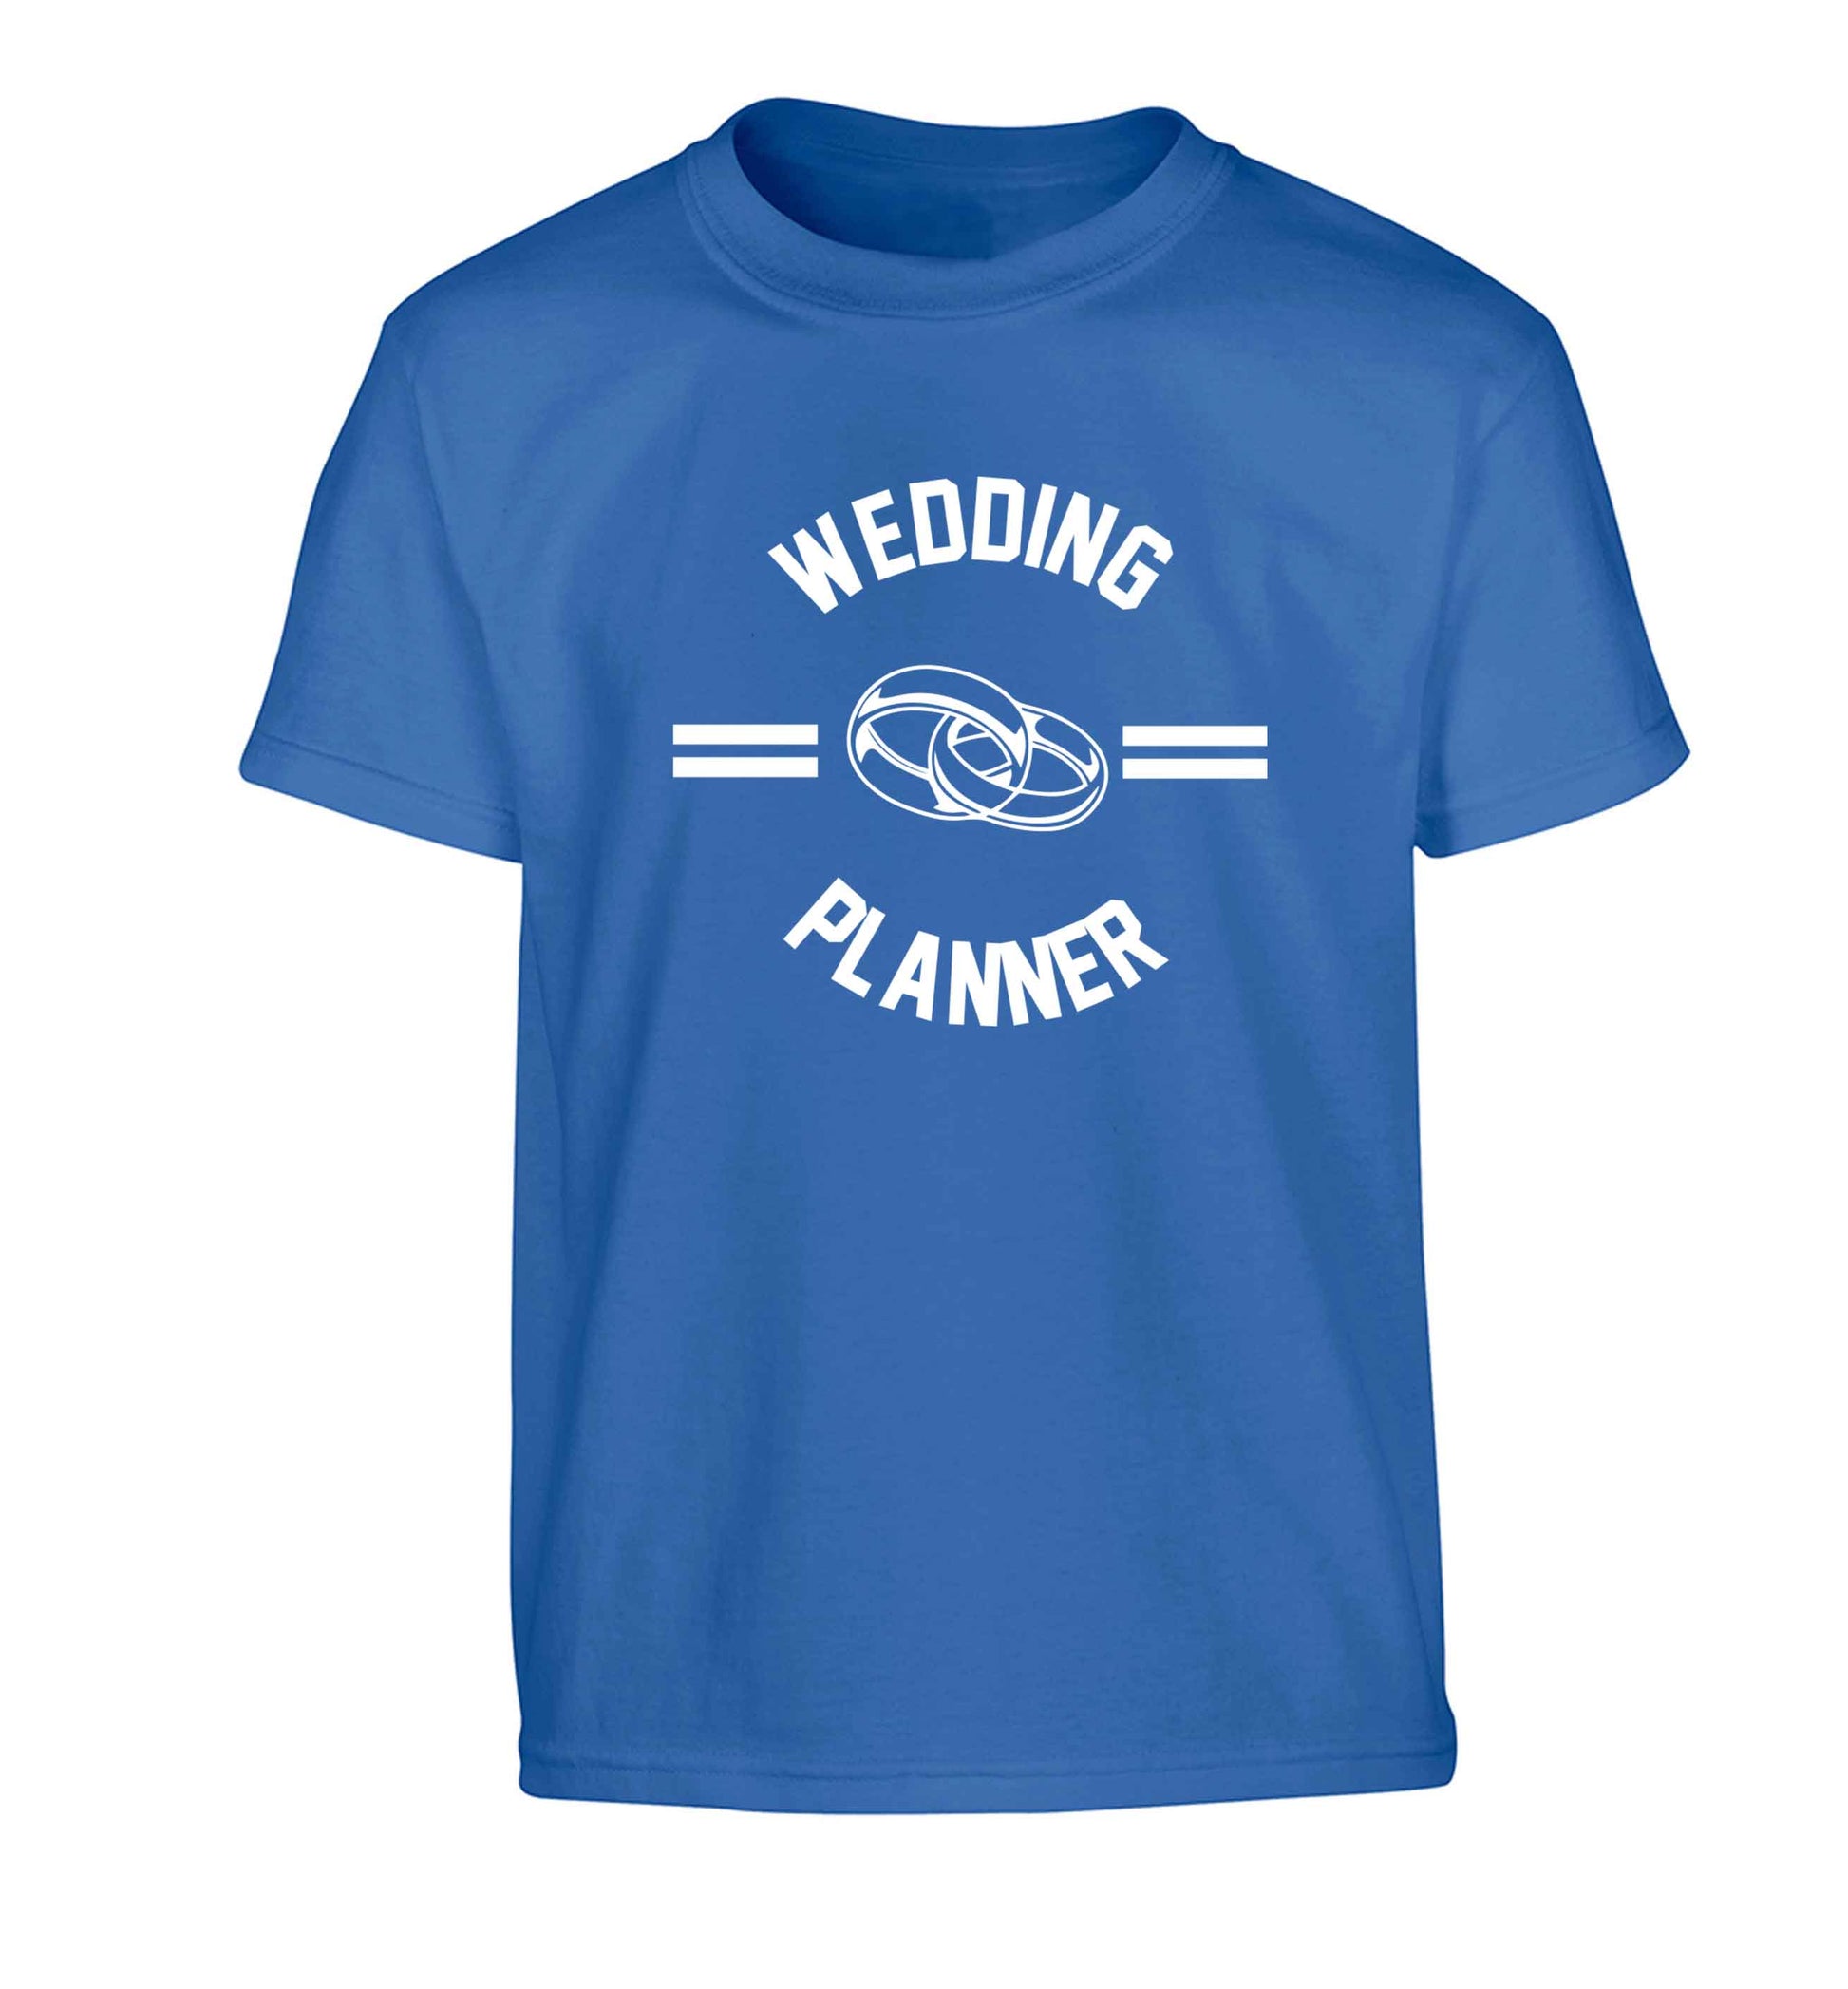 Wedding planner Children's blue Tshirt 12-13 Years